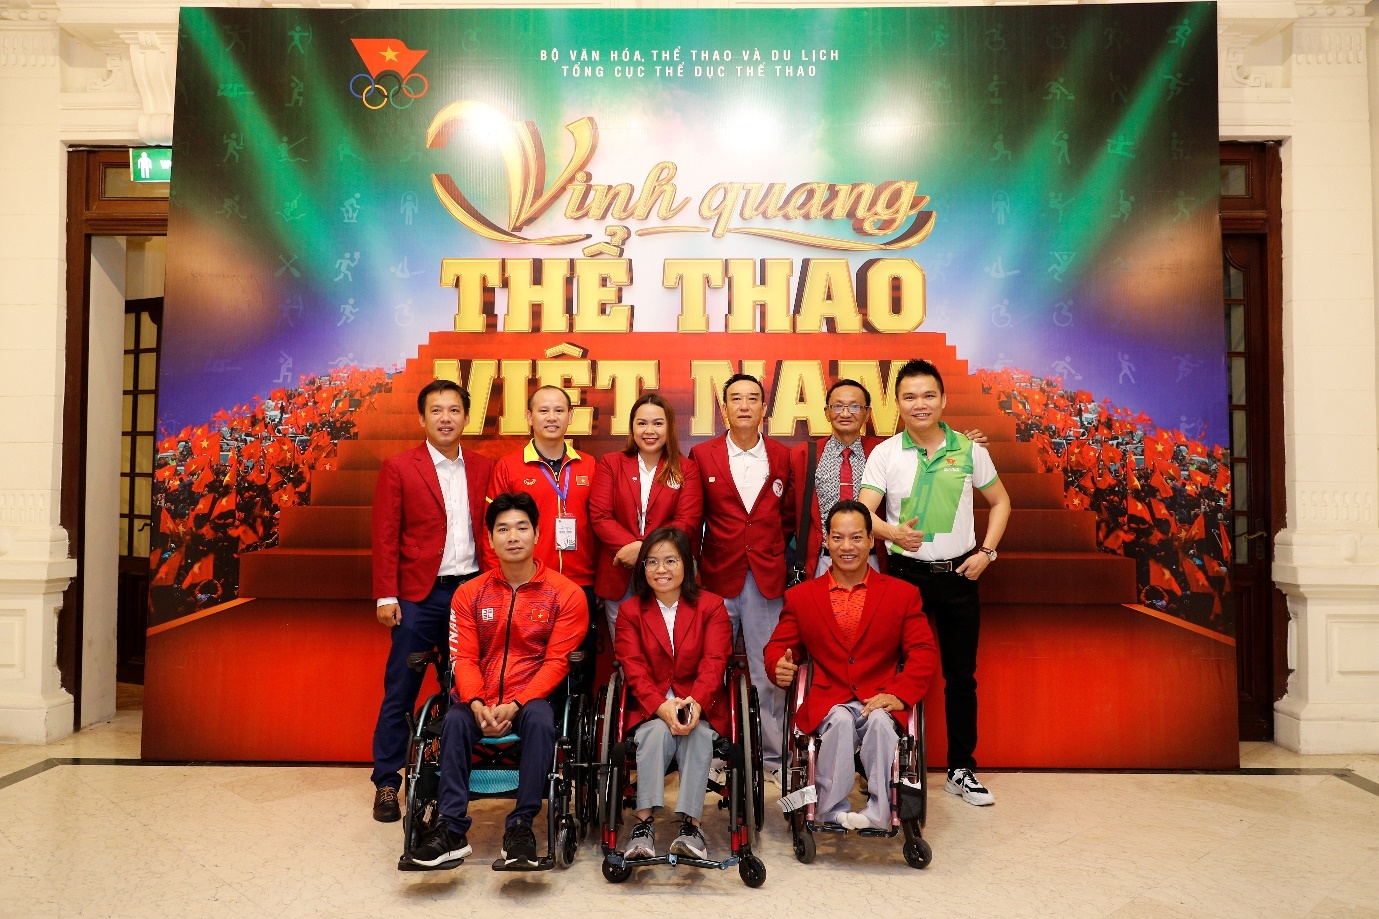 Đại diện Herbalife Việt Nam cùng tập thể các VĐV, HLV tại chương trình “Vinh quang Thể thao Việt Nam” 2022 - Ảnh: Herbalife Việt Nam